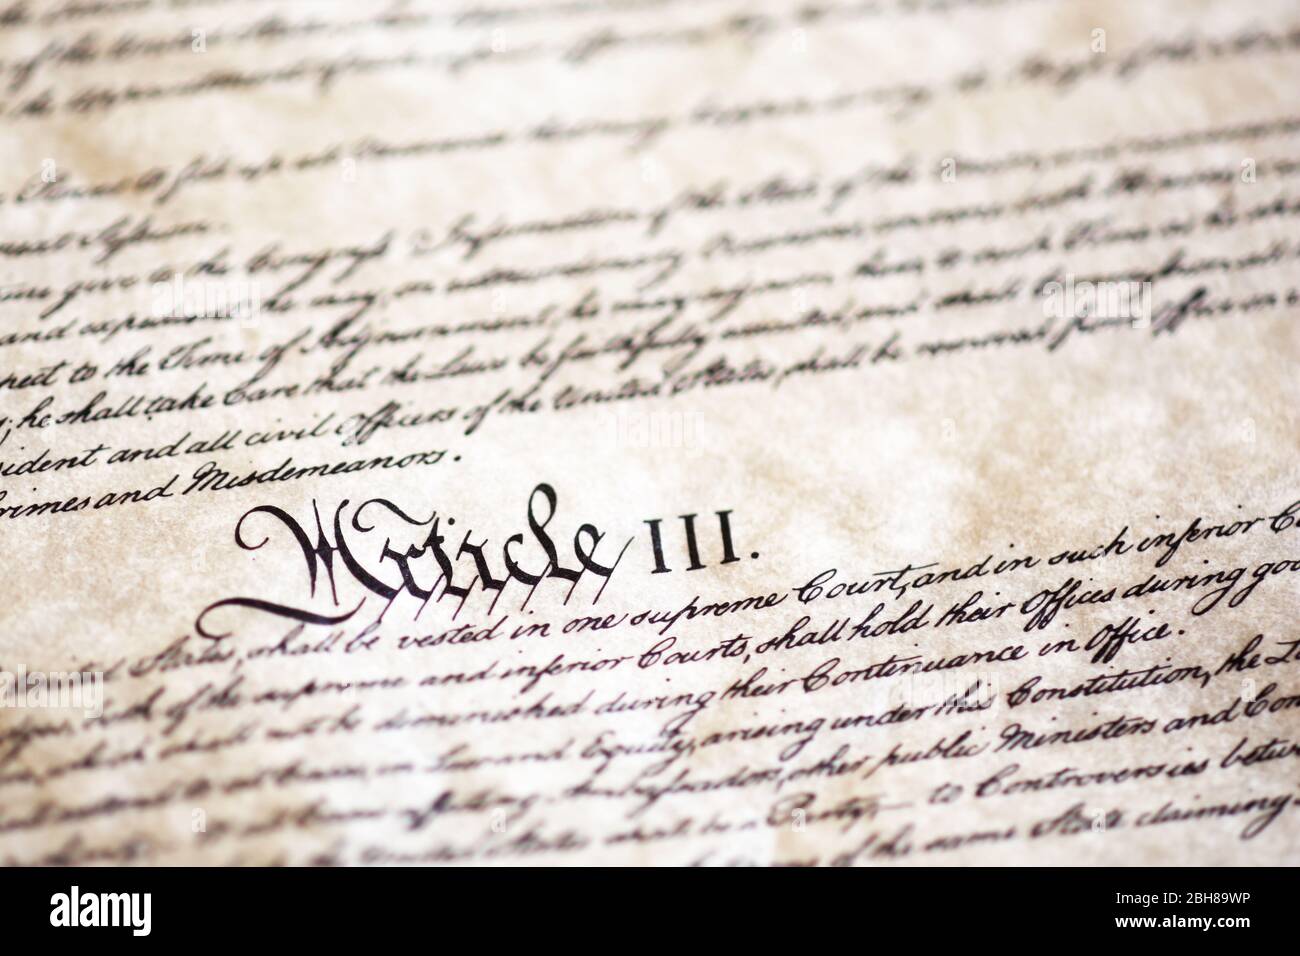 Detalle de la Constitución de los Estados Unidos Foto de stock